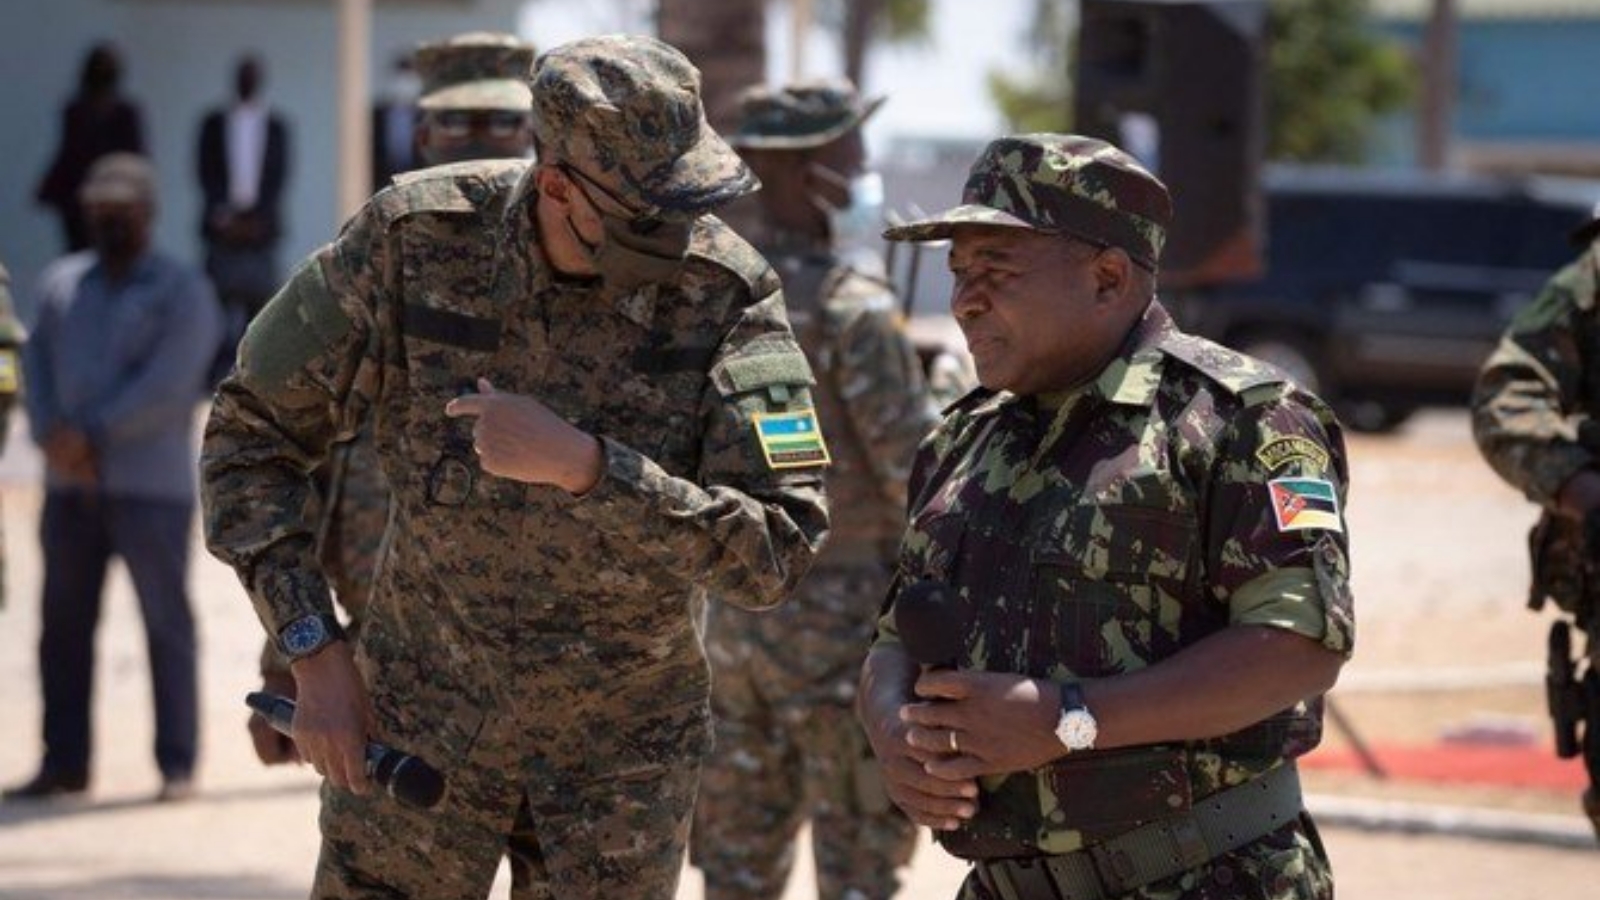 رئيس موزمبيق فيليبي نيوسي (يمين) ورئيس رواندا بول كاغامي، وكلاهما يرتديان إرهاقًا عسكريًا، شوهدوا في 24 أيلول/سبتمبر 2021 في بيمبا، مقاطعة كابو ديلجادو، موزمبيق.